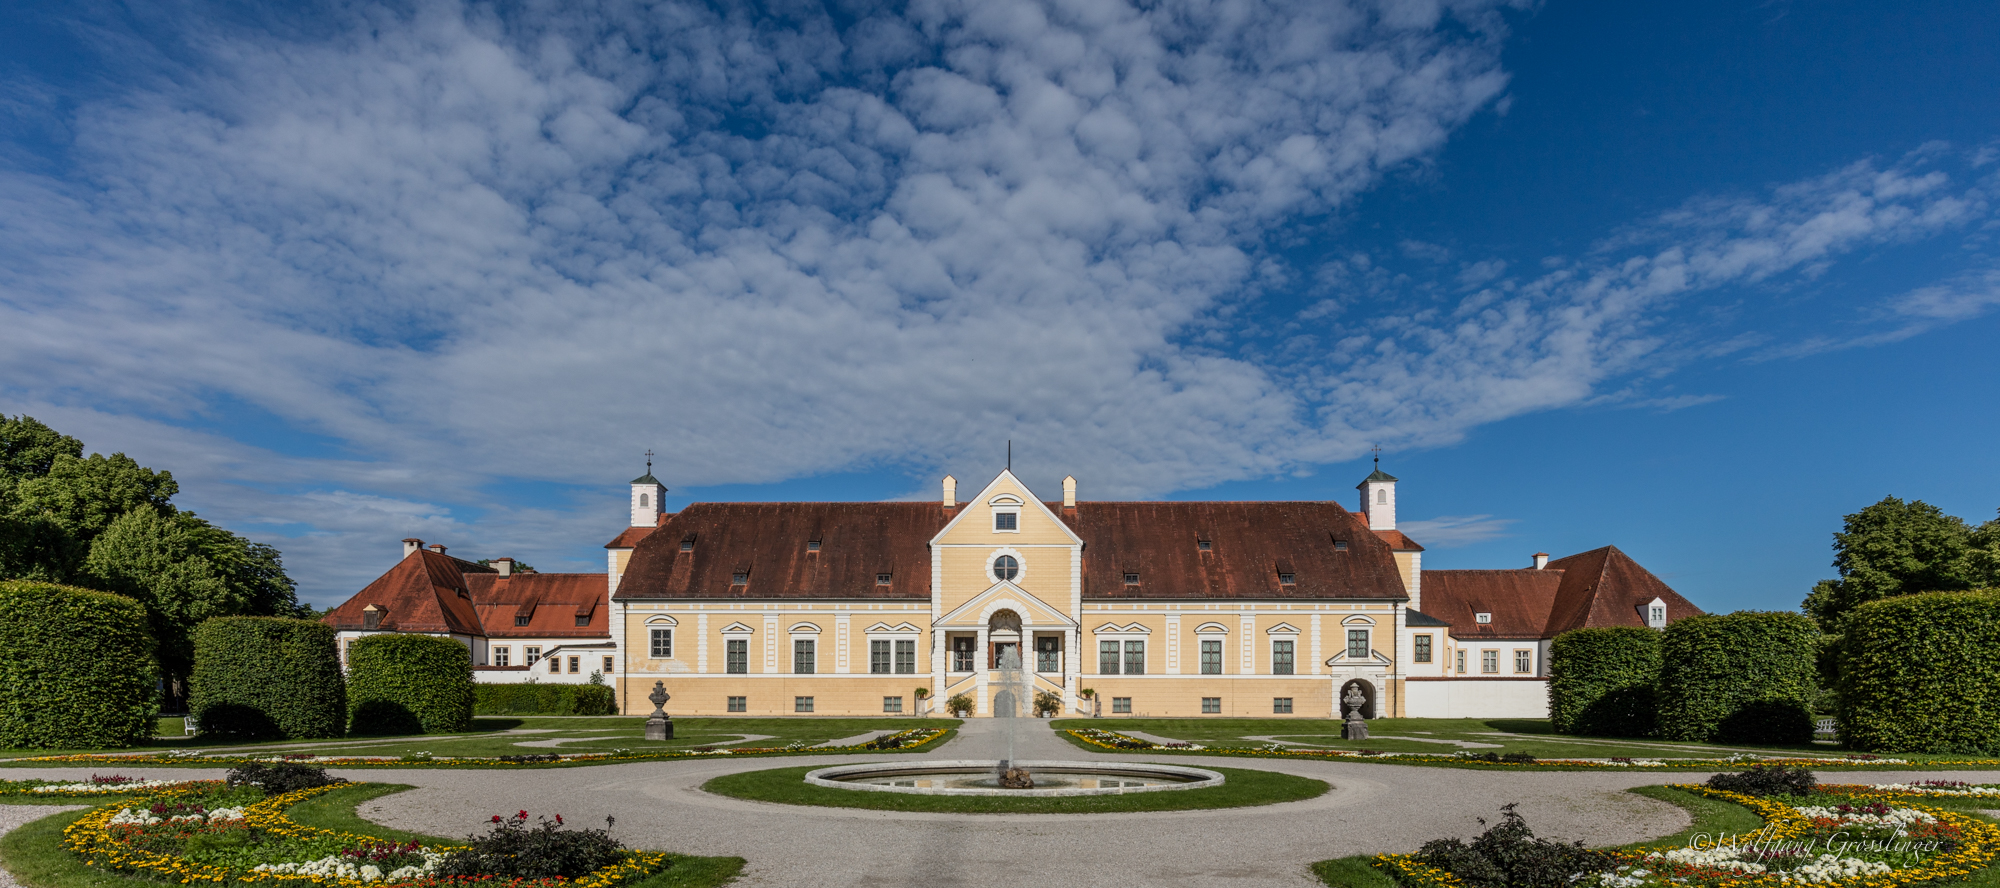 Altes Schloss Schleissheim